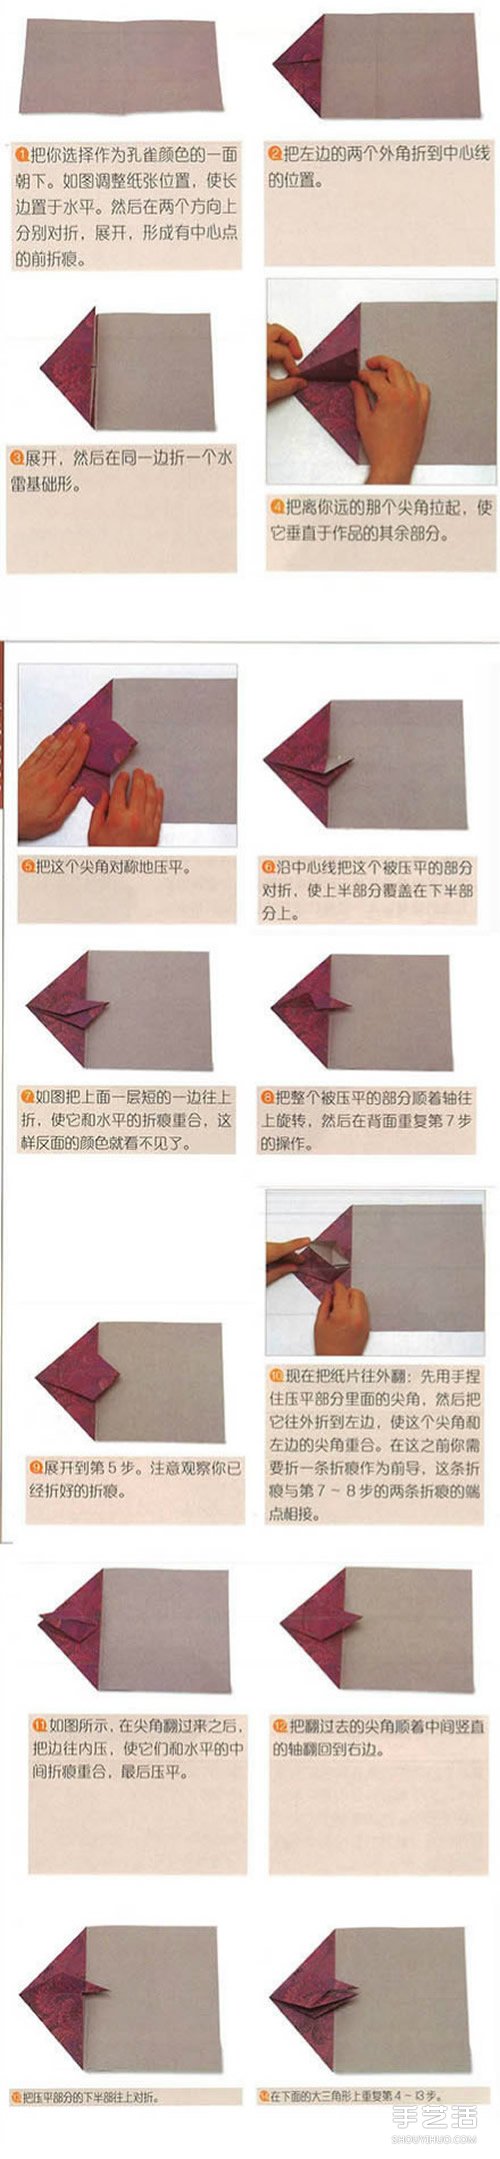 折纸孔雀开屏图解教程 孔雀开屏的折法步骤图